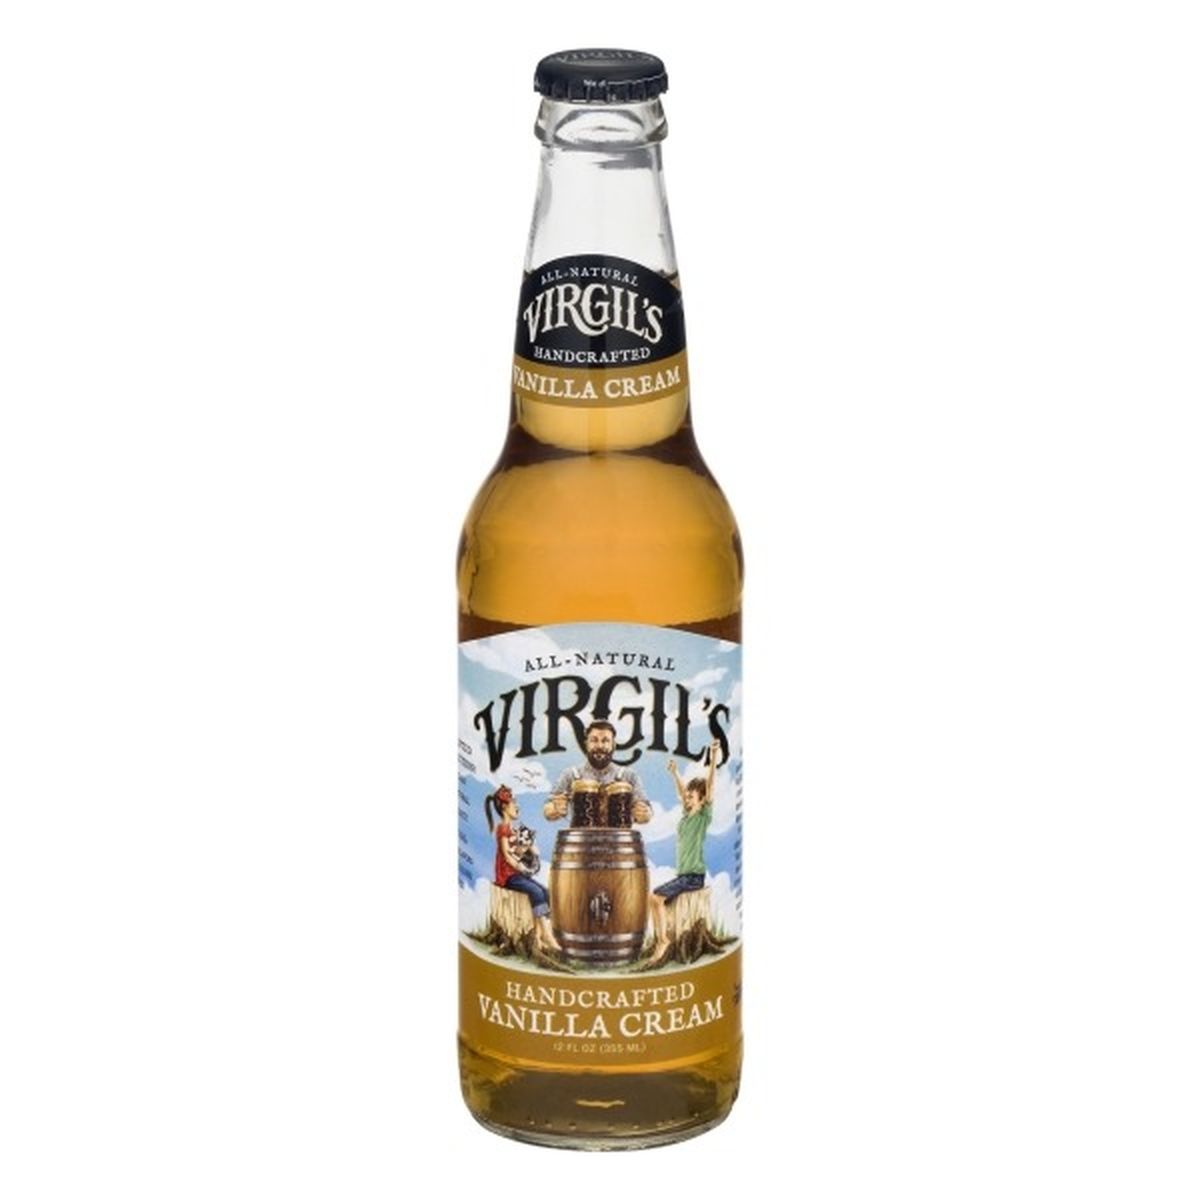 Calories in Virgil's Beer, Handcrafted, Vanilla Cream